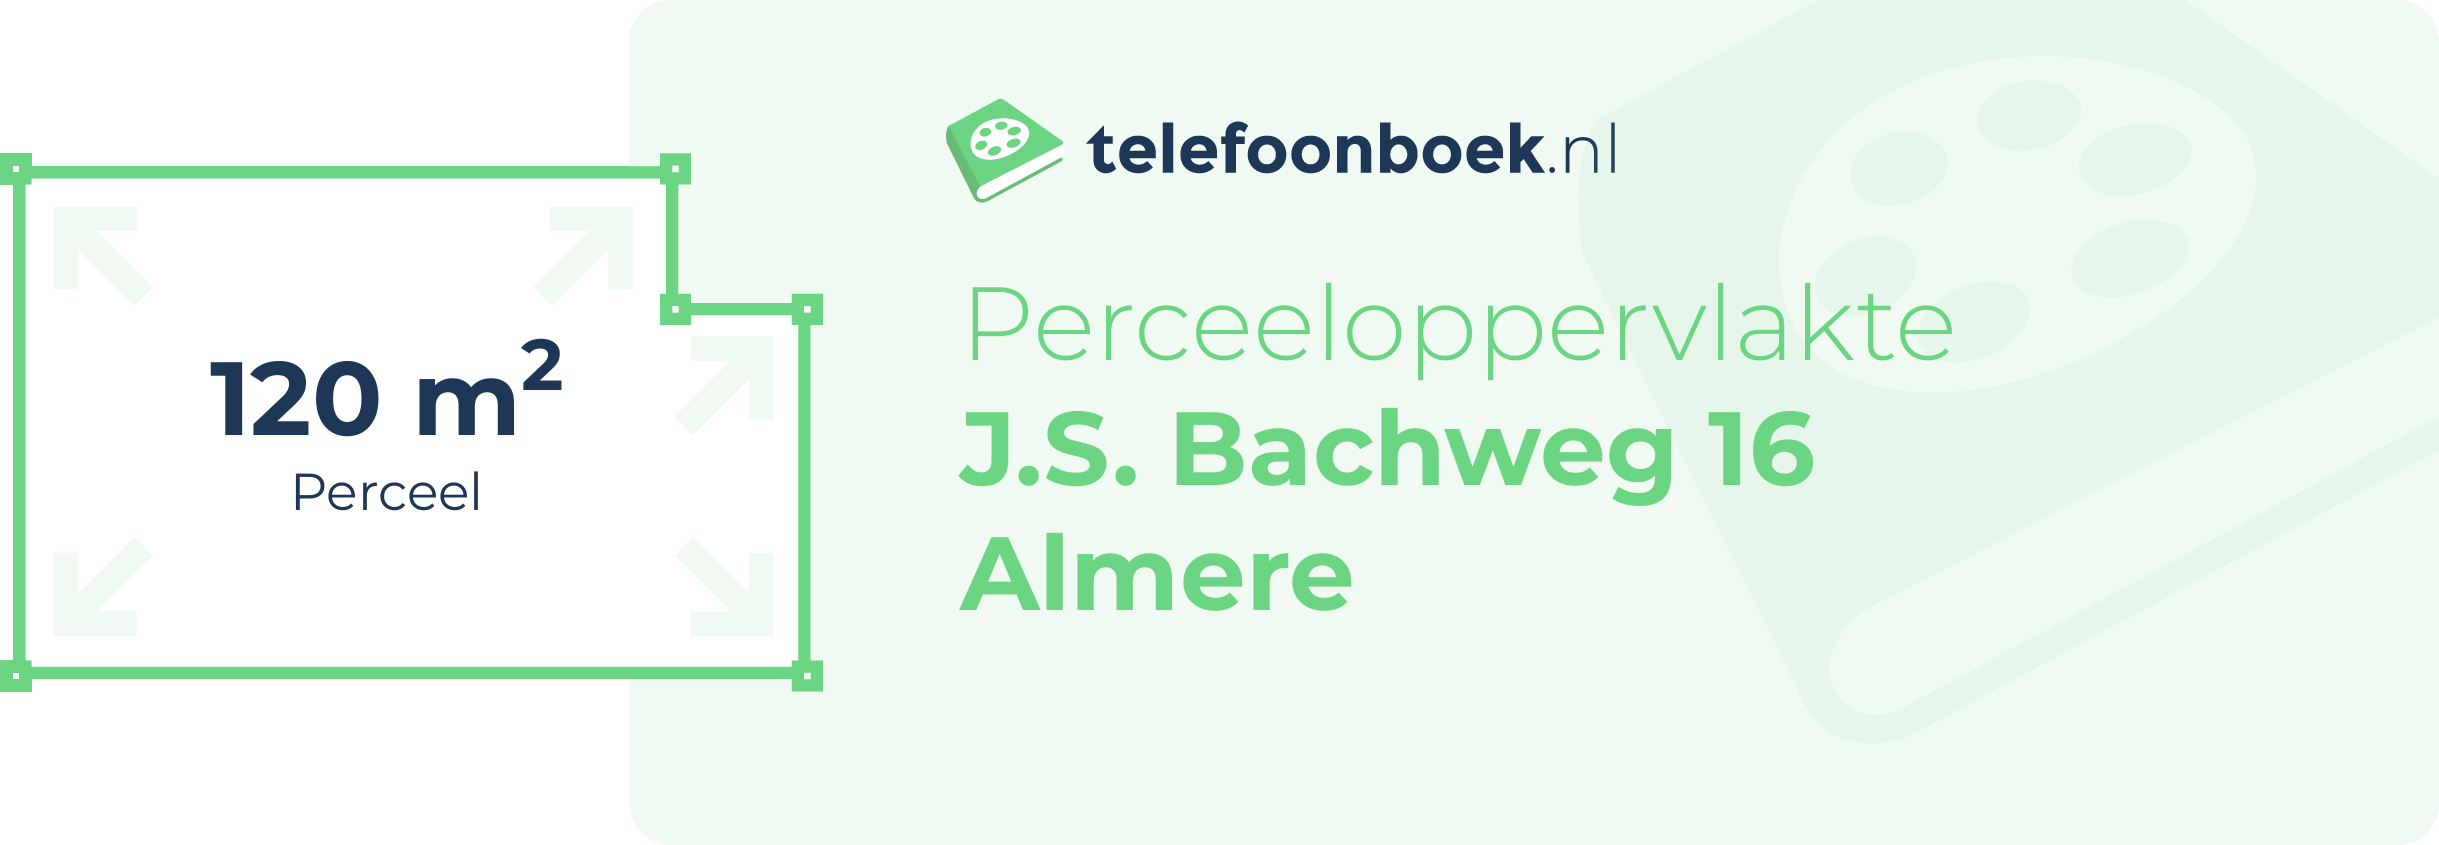 Perceeloppervlakte J.S. Bachweg 16 Almere